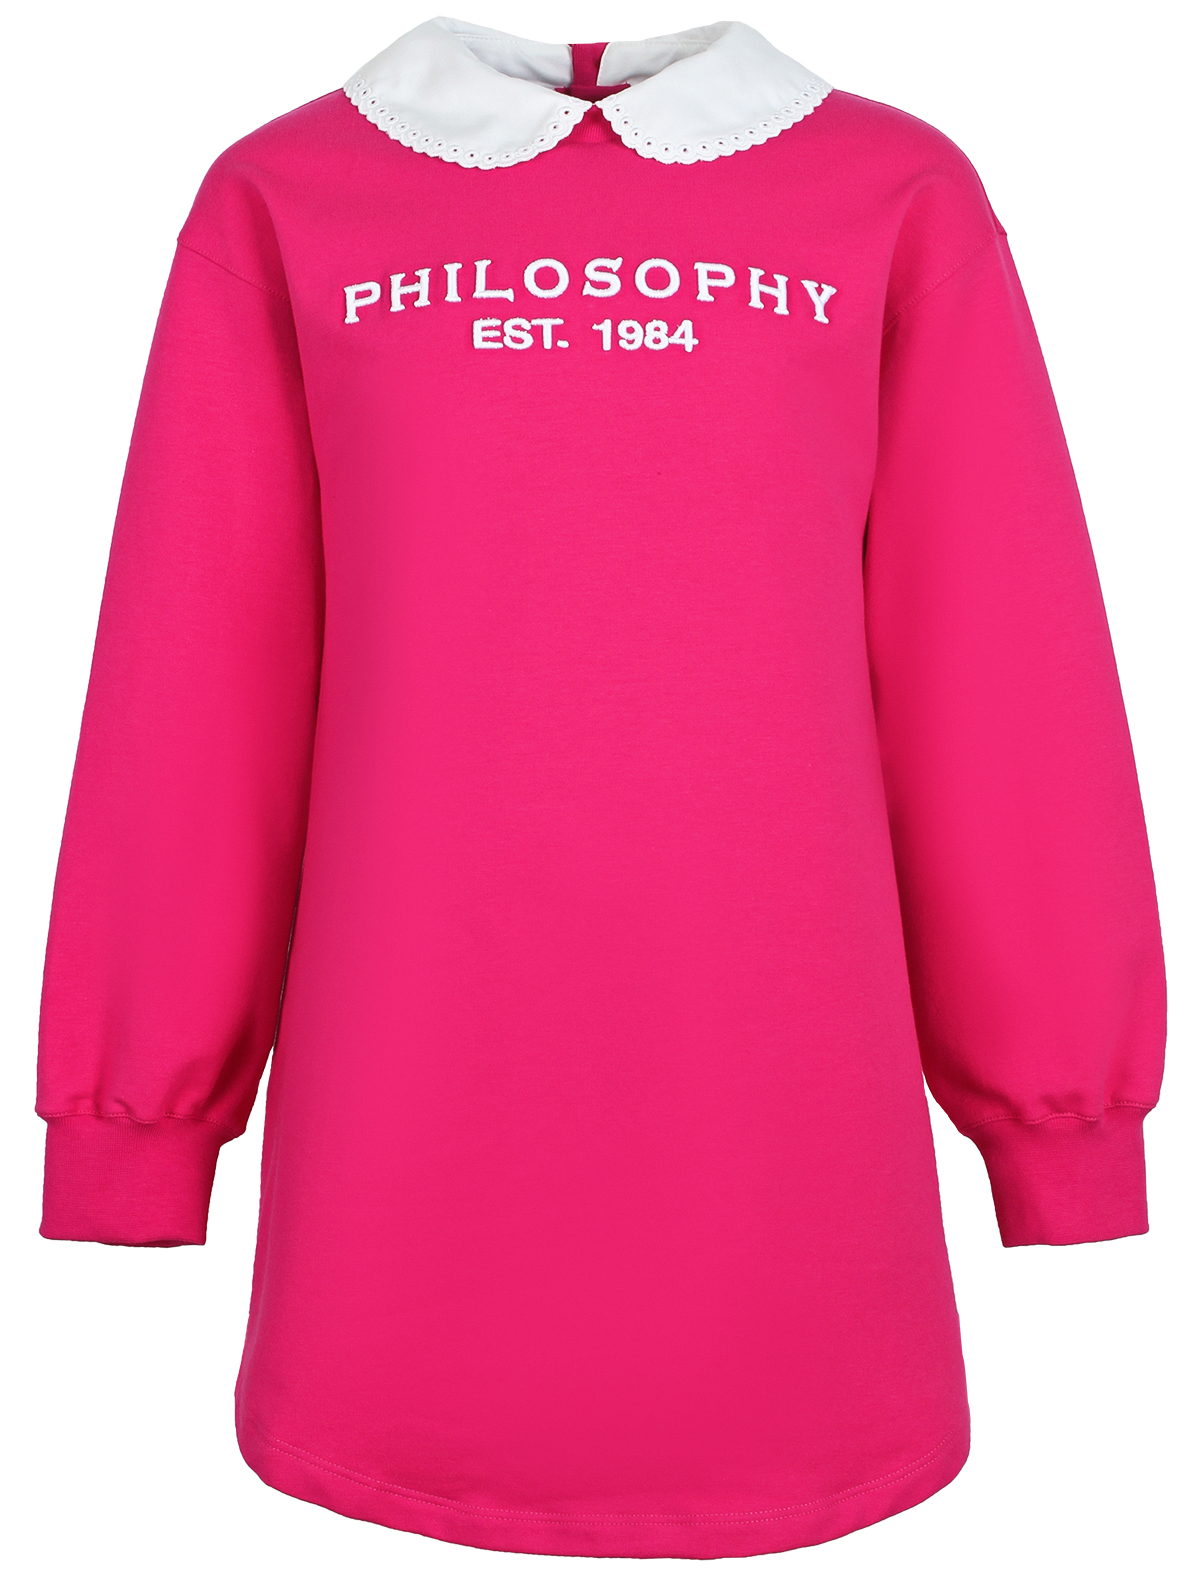 Платье Philosophy 2620746, цвет розовый, размер 7 1054609386910 - фото 1